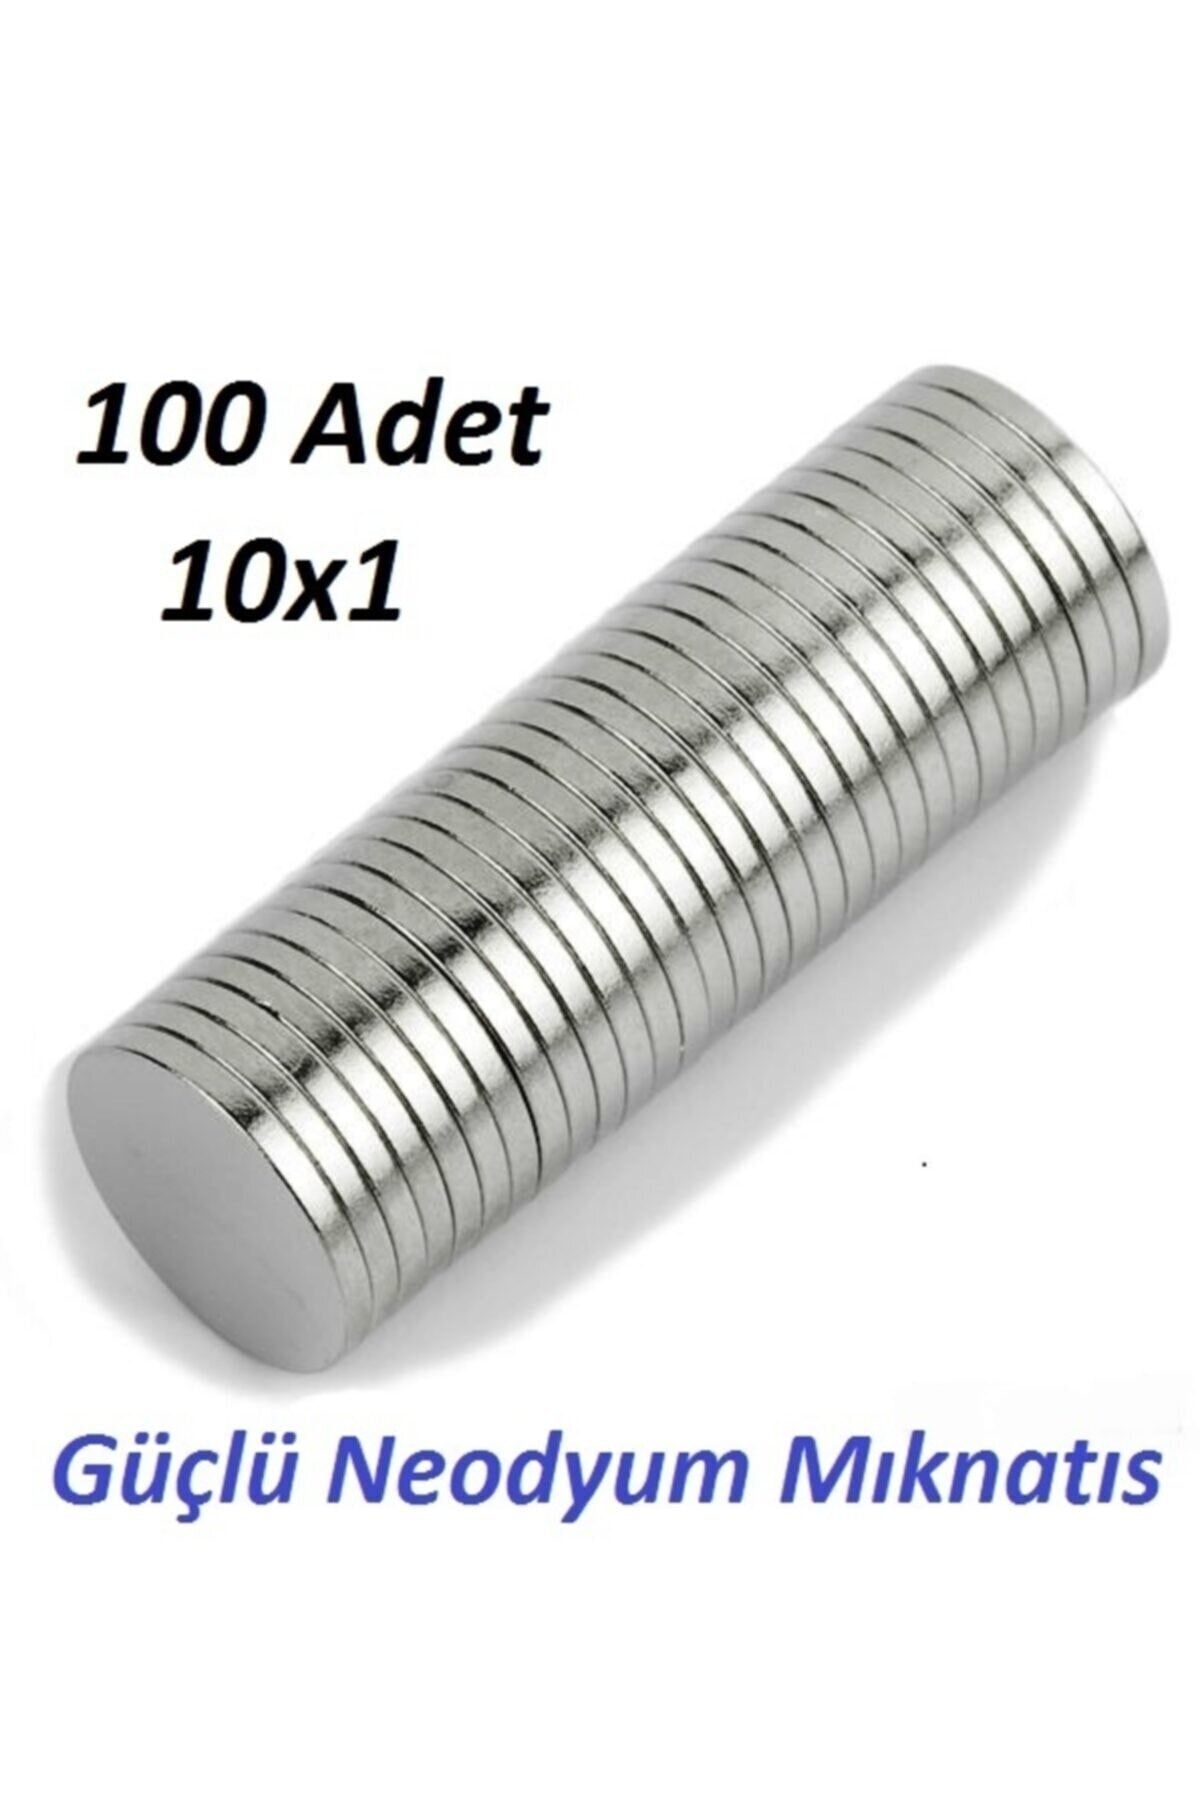 AYMAGNET 100 Adet Çap 10mm X Kalınlık 1mm Yuvarlak Güçlü Neodyum Mıknatıs